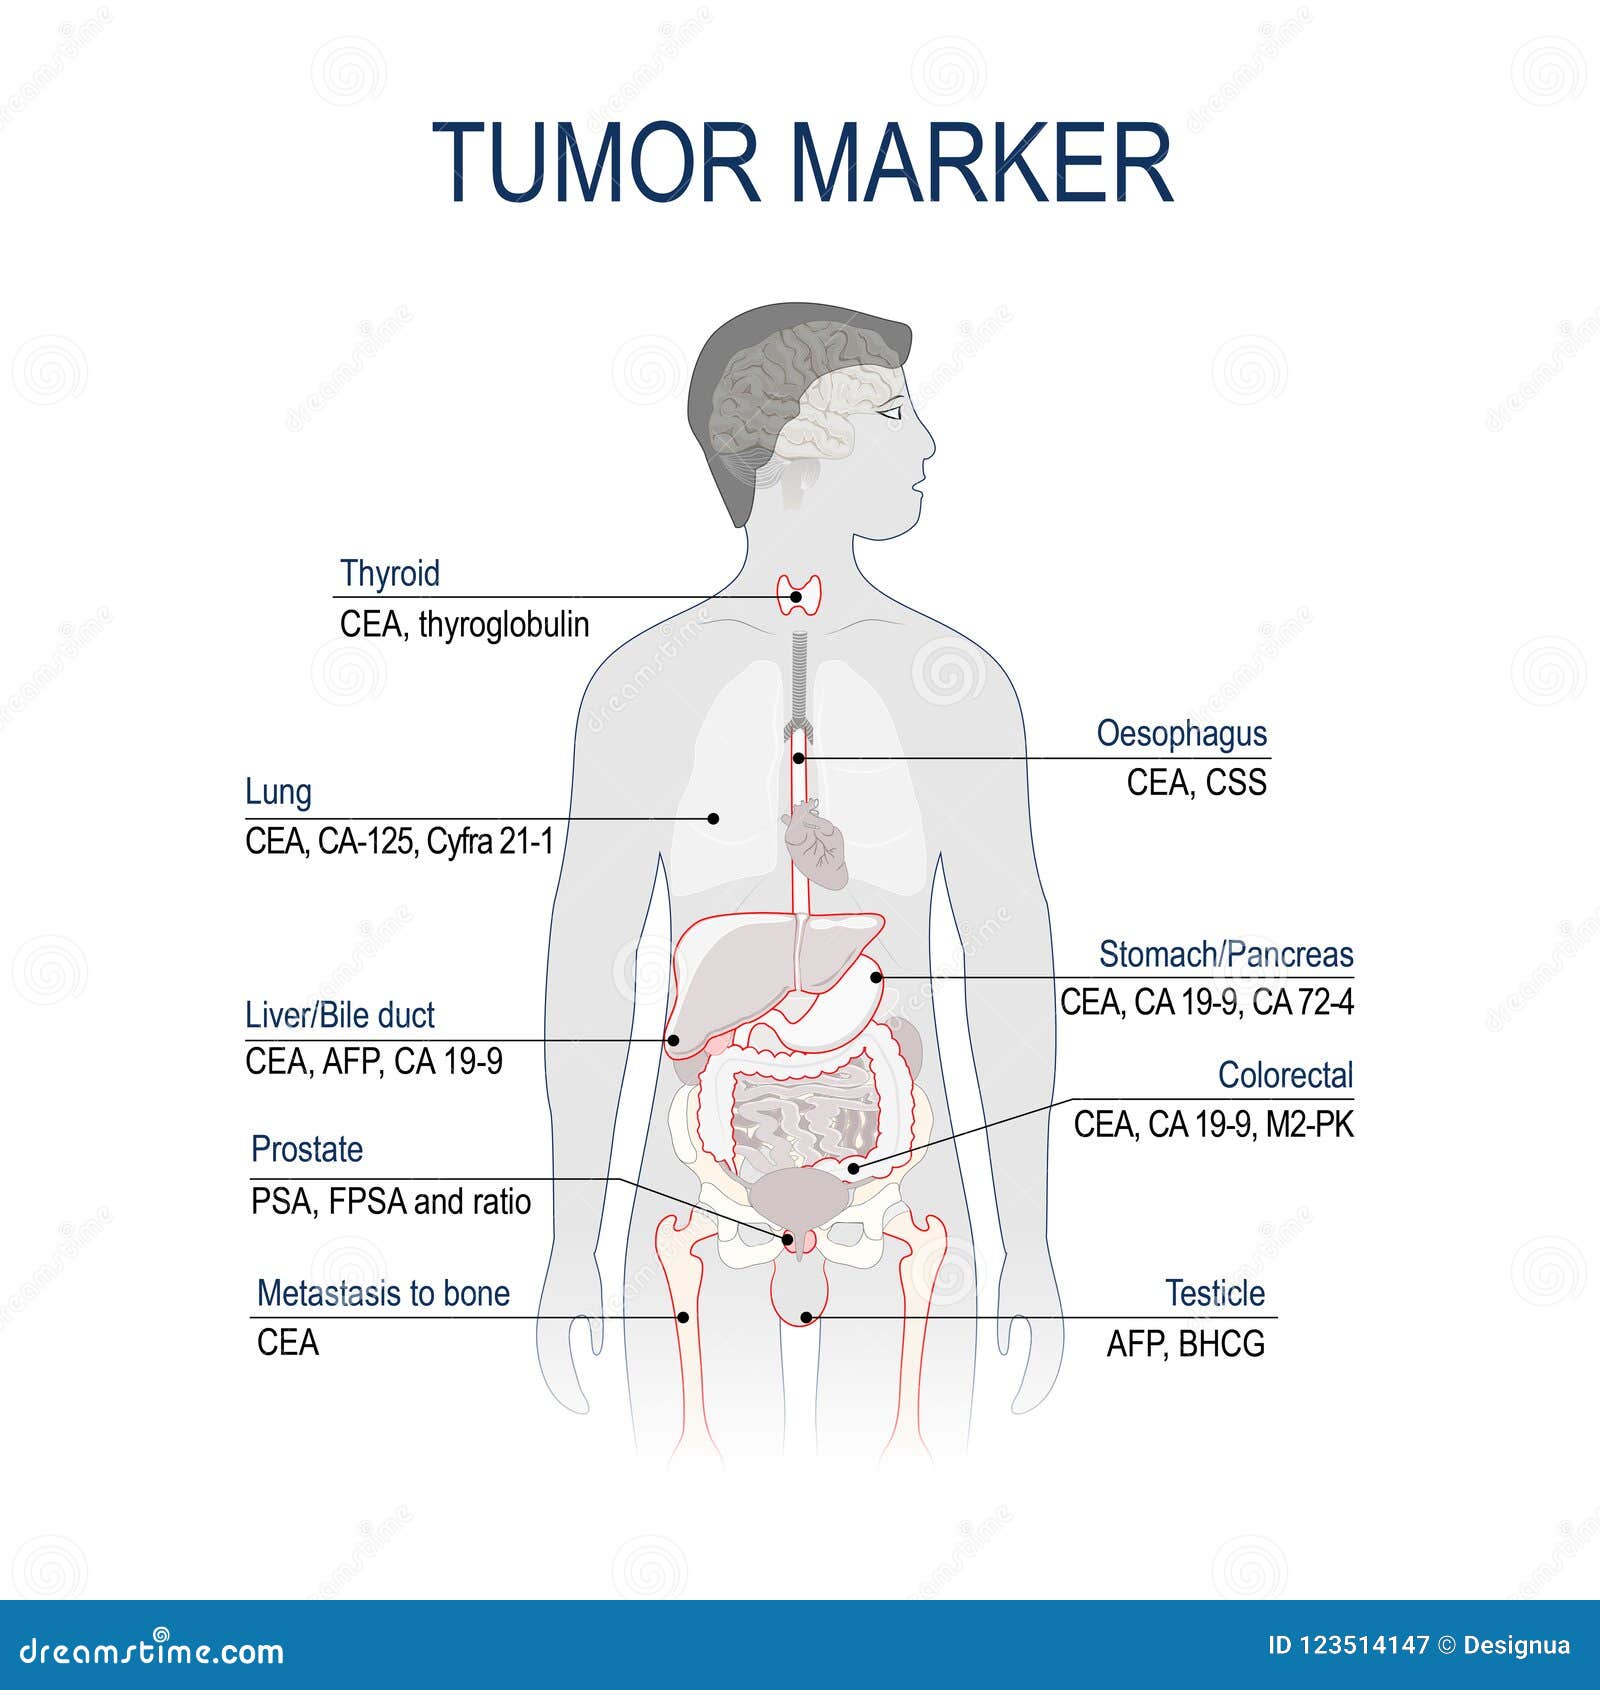 tumor marker or biomarker.